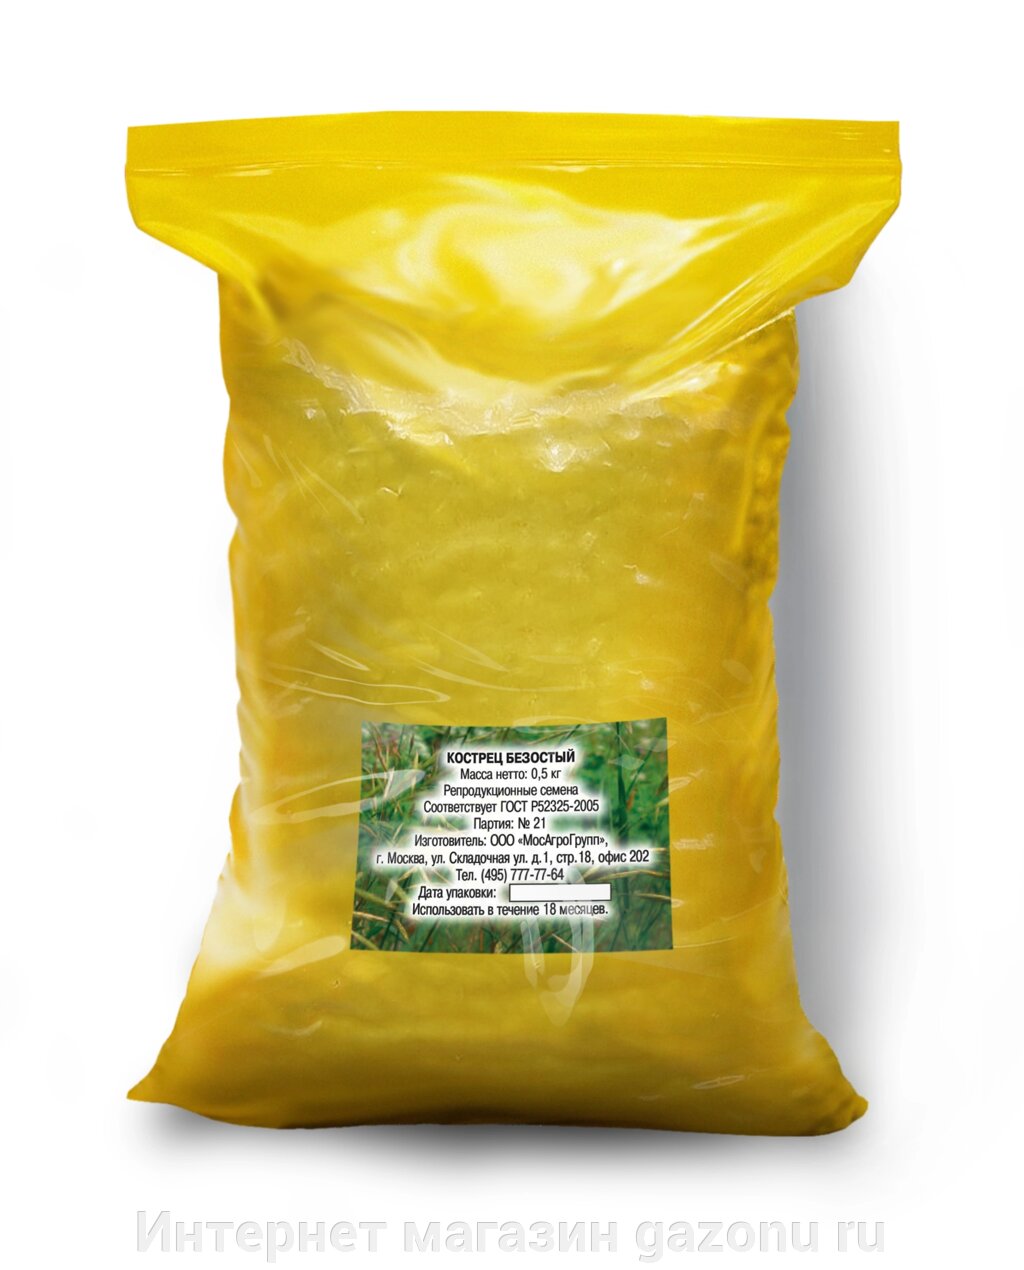 Семена костреца безостого - 1 кг от компании Интернет магазин gazonu ru - фото 1